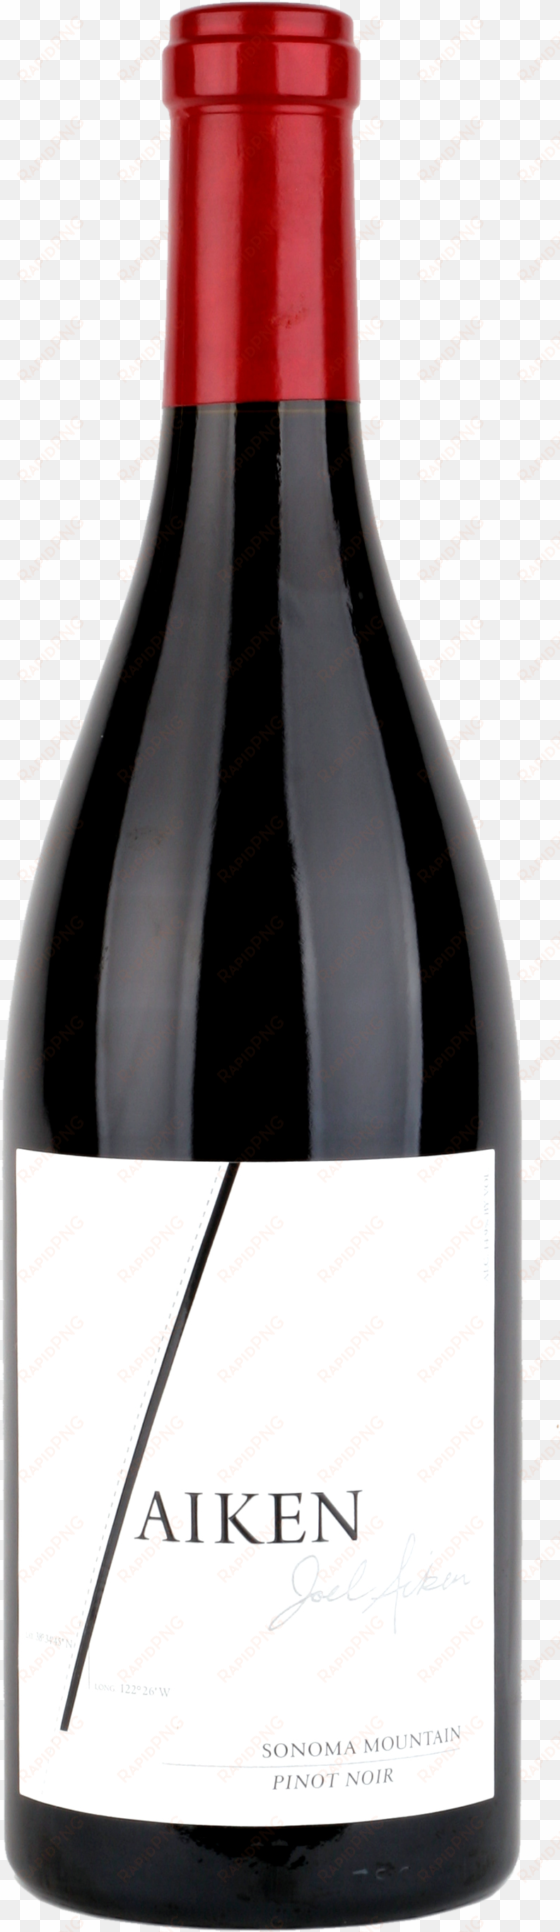 wine bottle png image